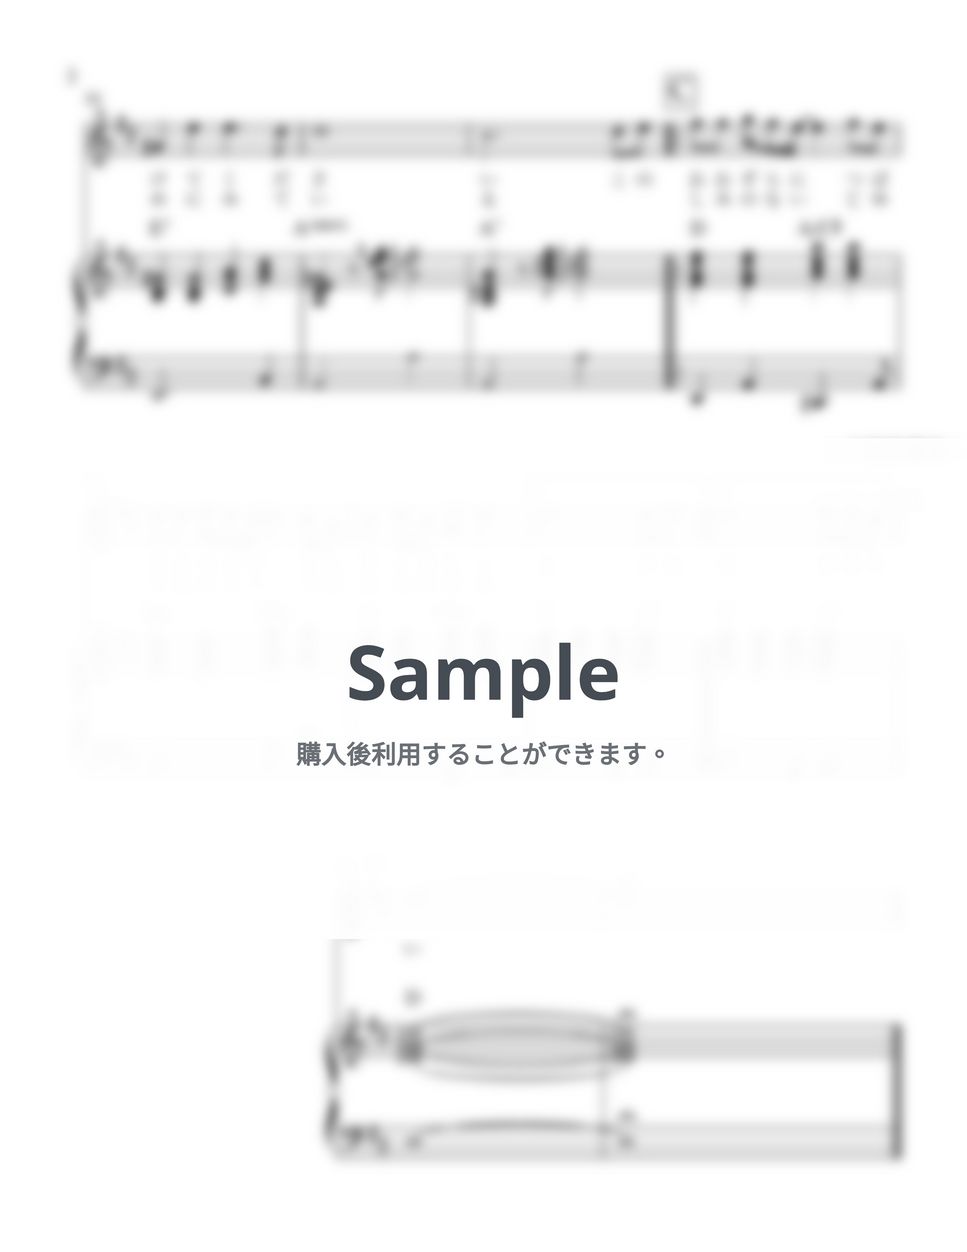 村井邦彦 - 翼をください 　７つの調のセット(G,A,Bb,C,D,Eb,F) (歌唱用。ピアノ伴奏あり) by マリクマタ